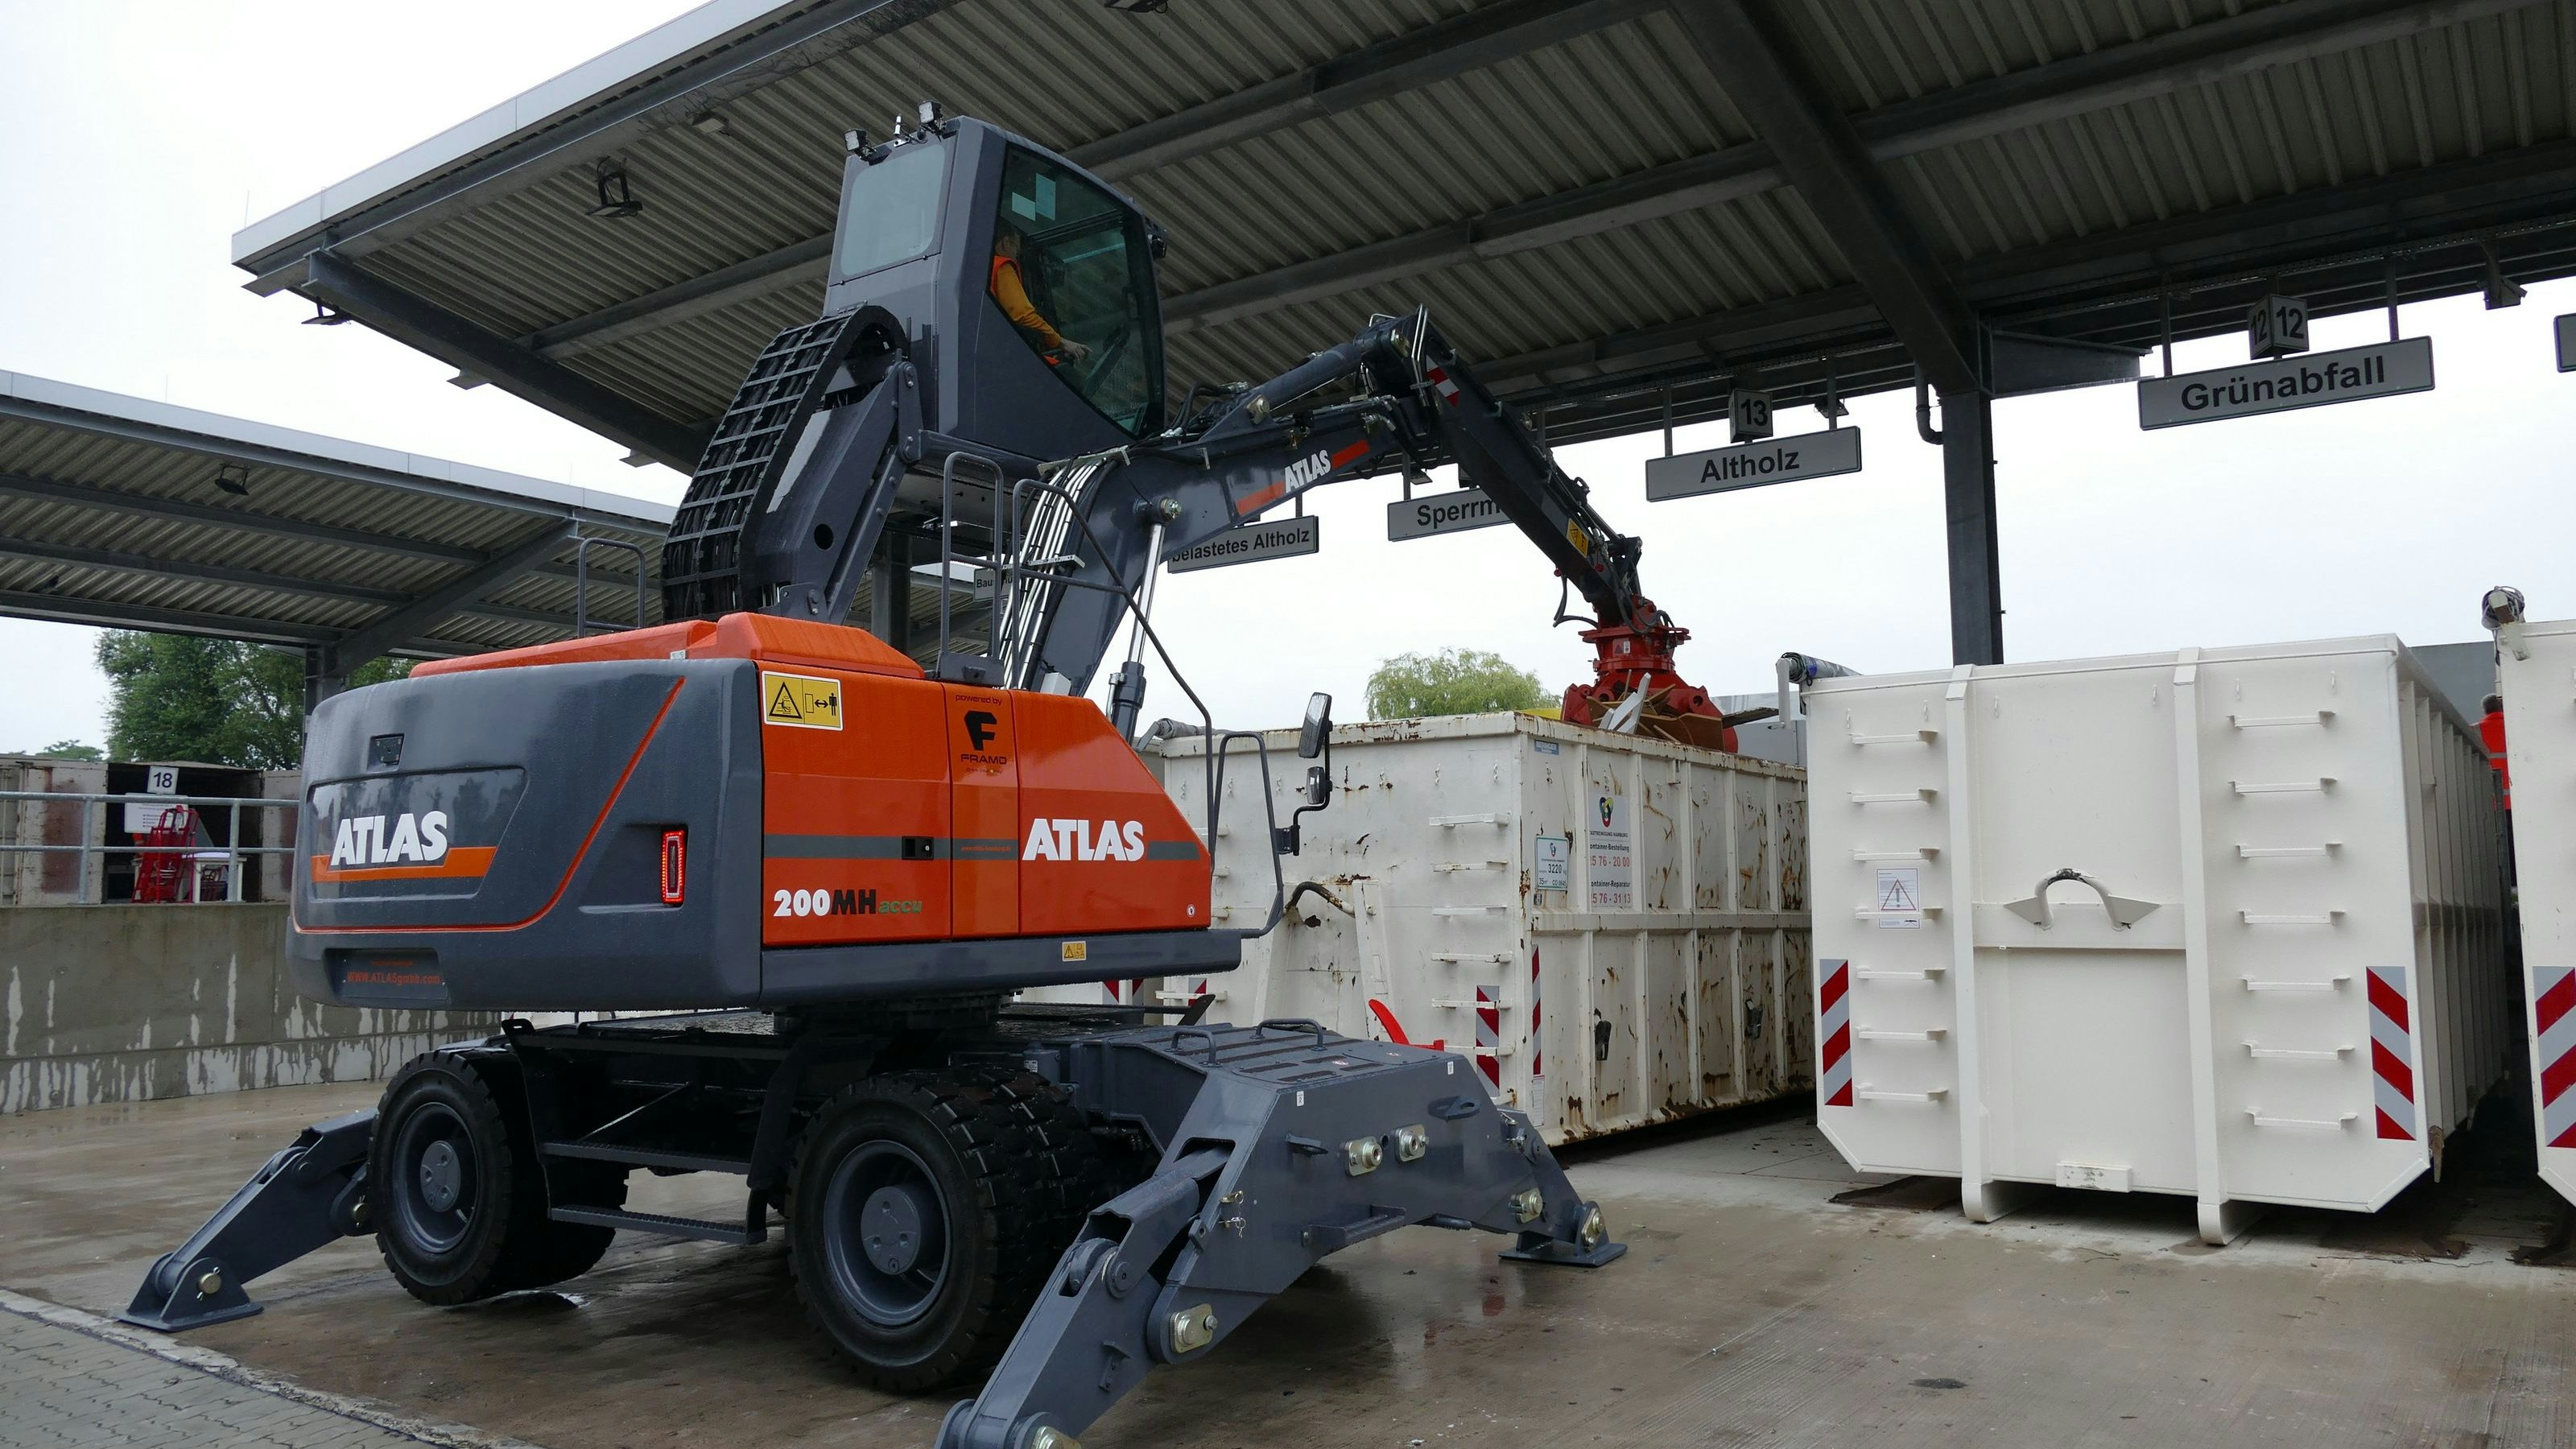 Im 21 Tonnen schweren Umladebagger Atlas 200 MH accu schlägt ein elektrisches Herz. Foto: Maas <br>